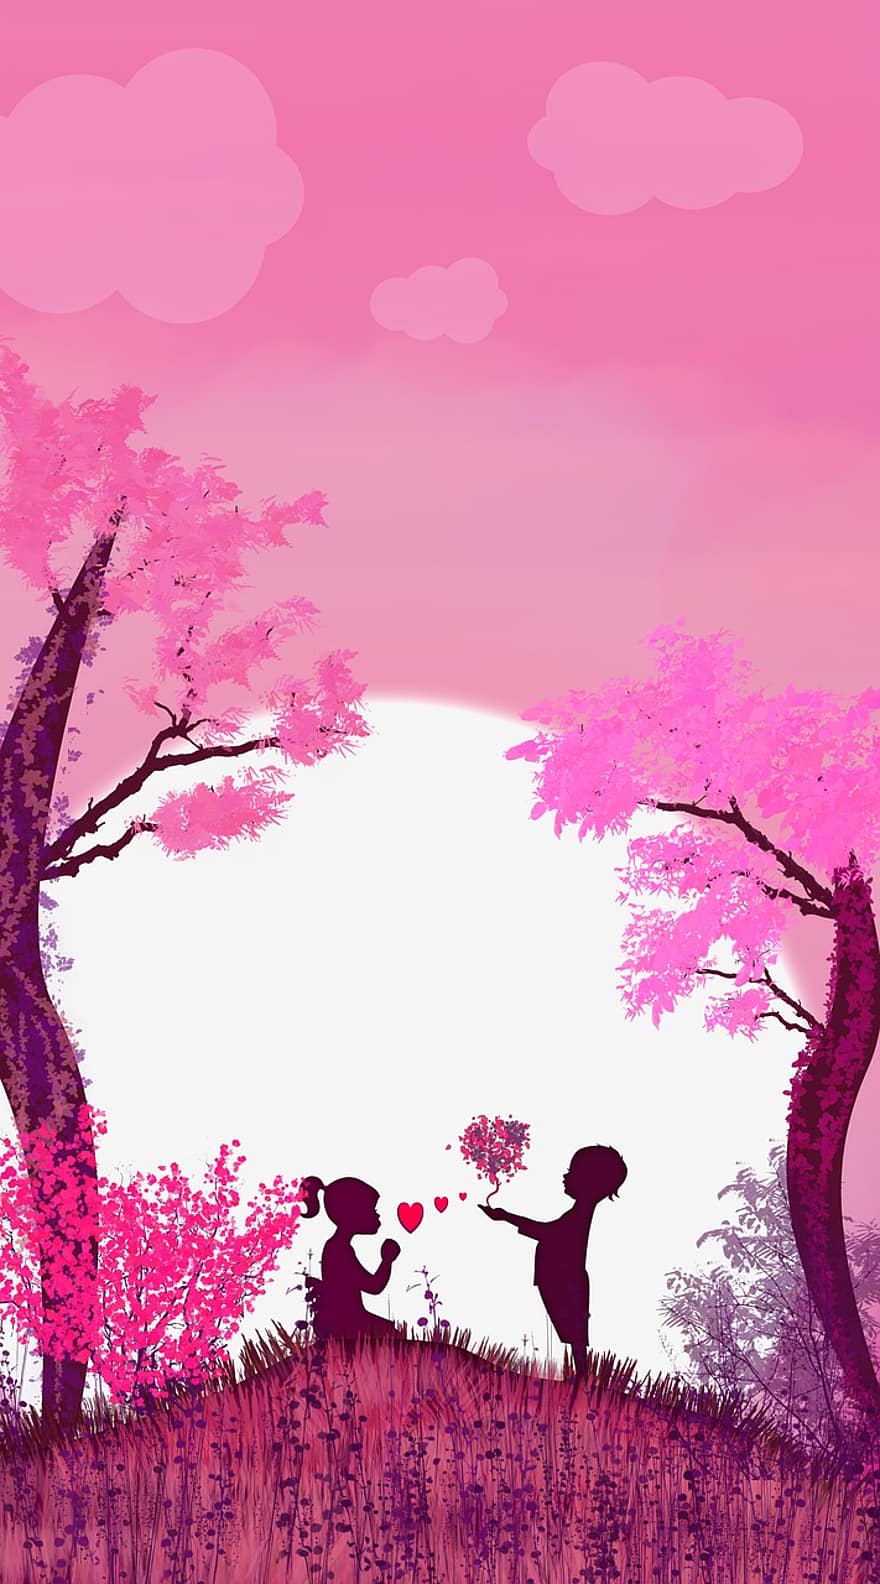 amor, parella, fons rosa, romanç, arbre, vector, il·lustració, posta de sol, paisatge, fons, silueta